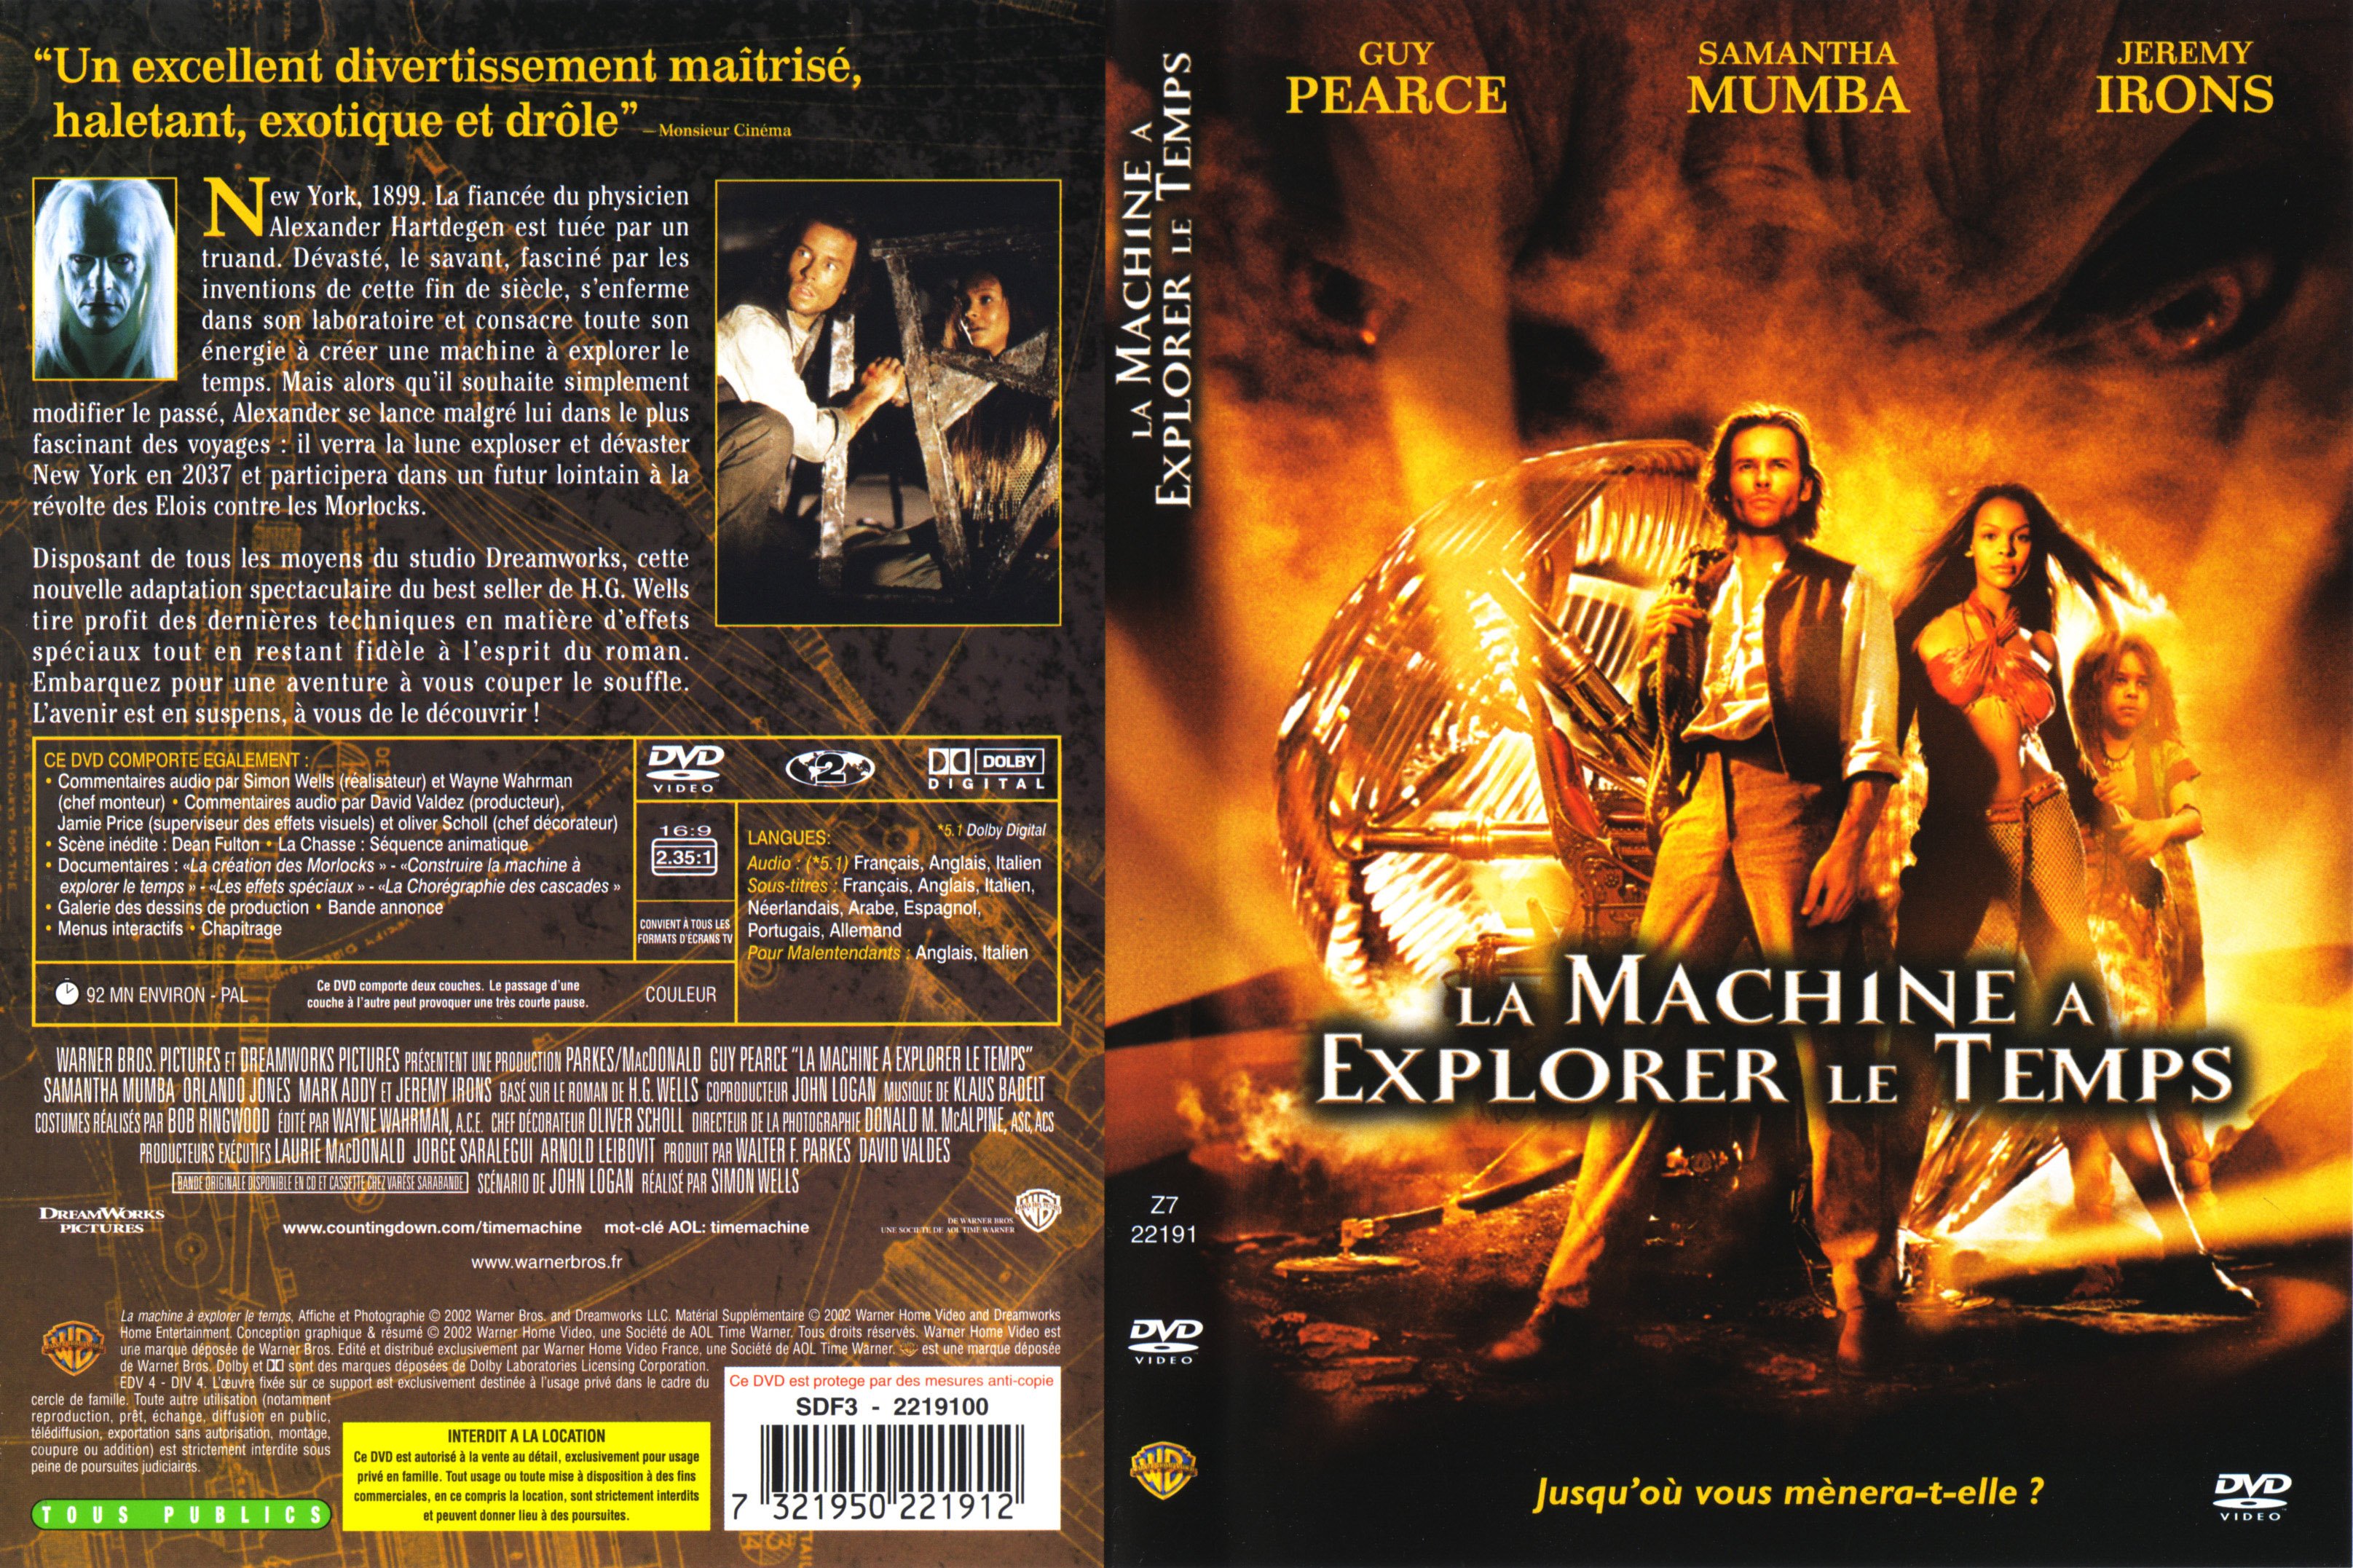 Jaquette DVD La machine  explorer le temps (2002)